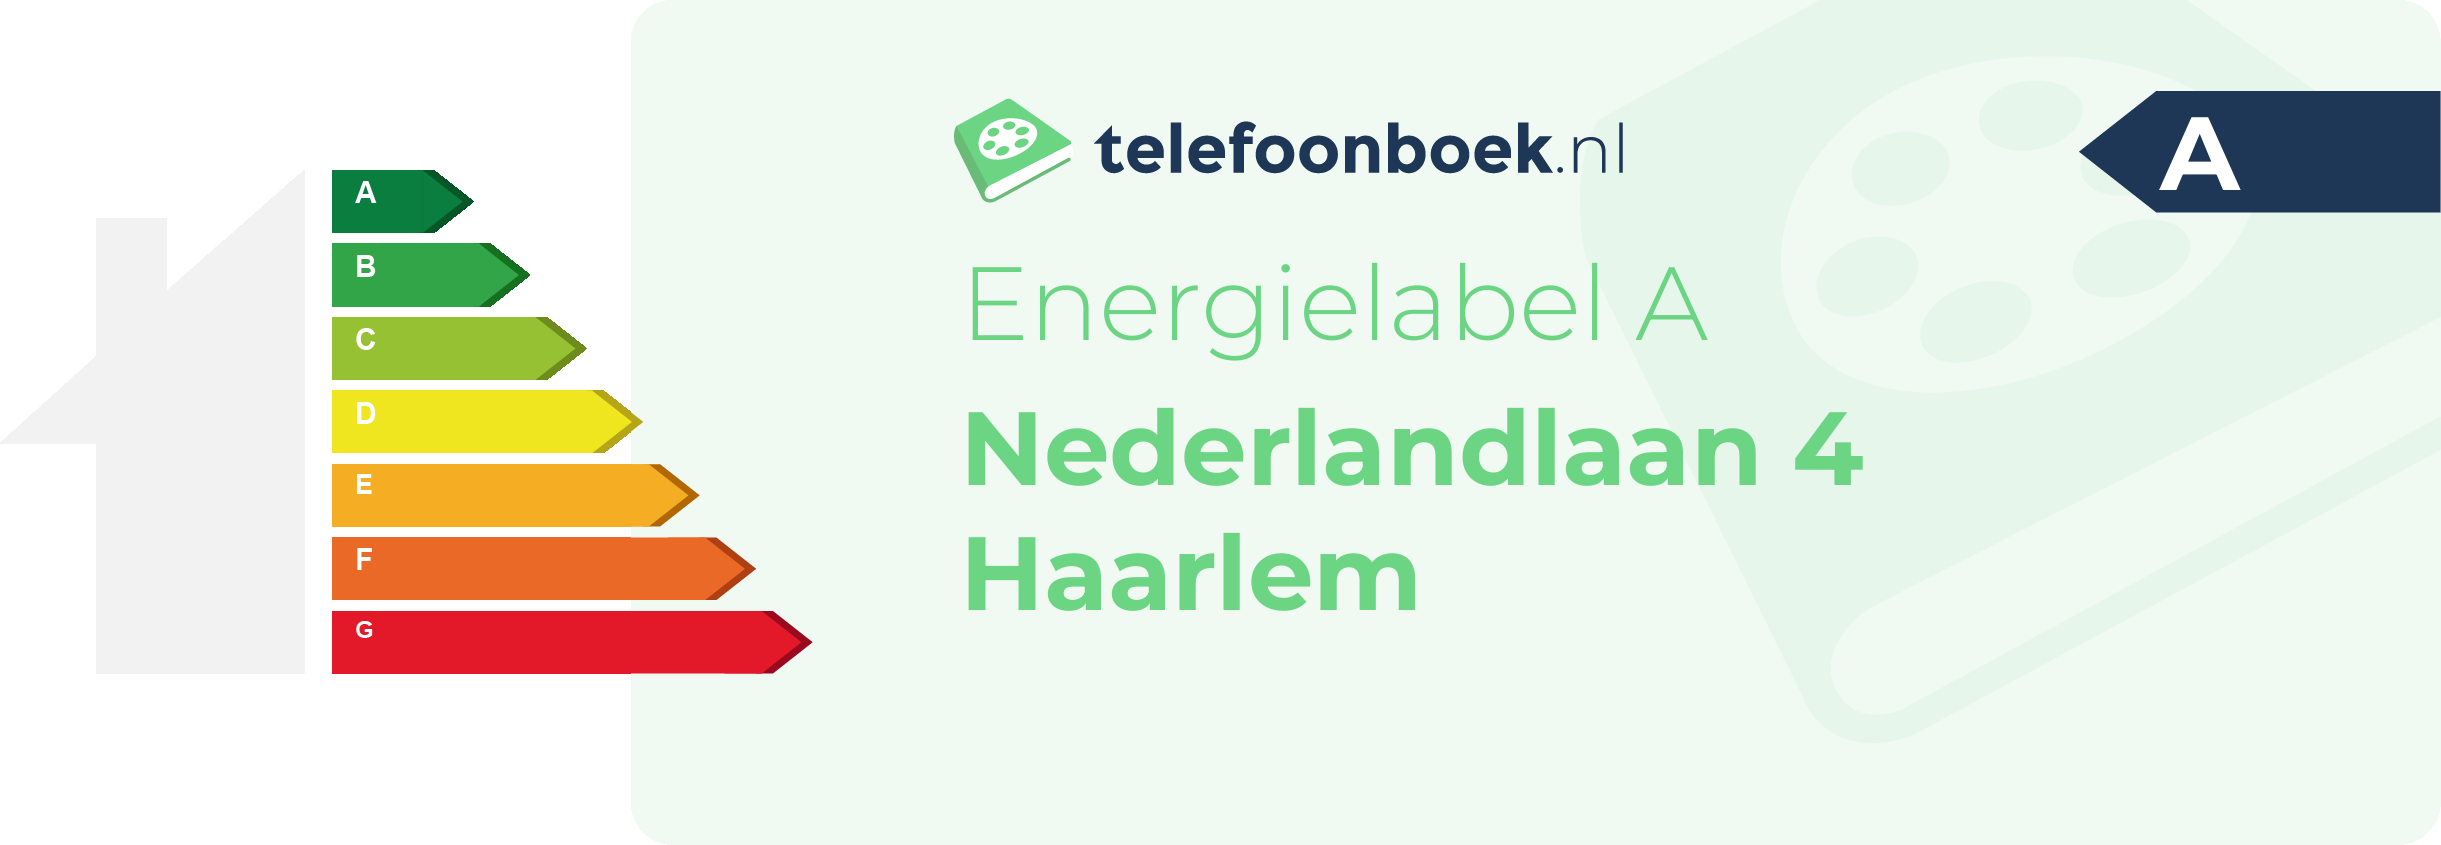 Energielabel Nederlandlaan 4 Haarlem